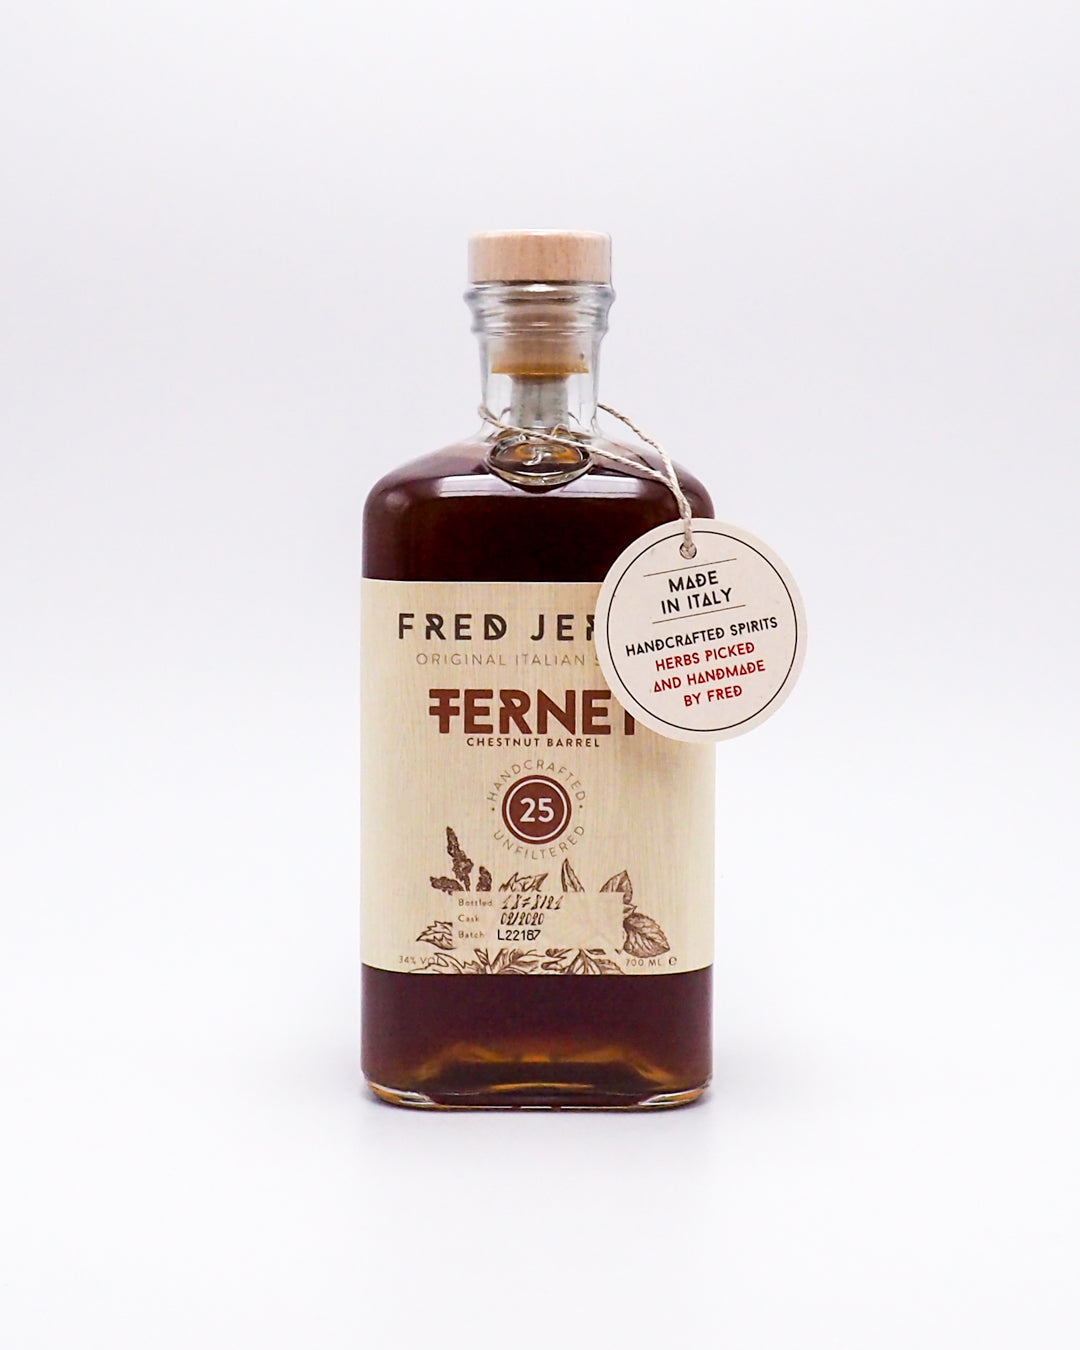 fernet25-chestnut-barrel-fred-jerbis-34-70cl